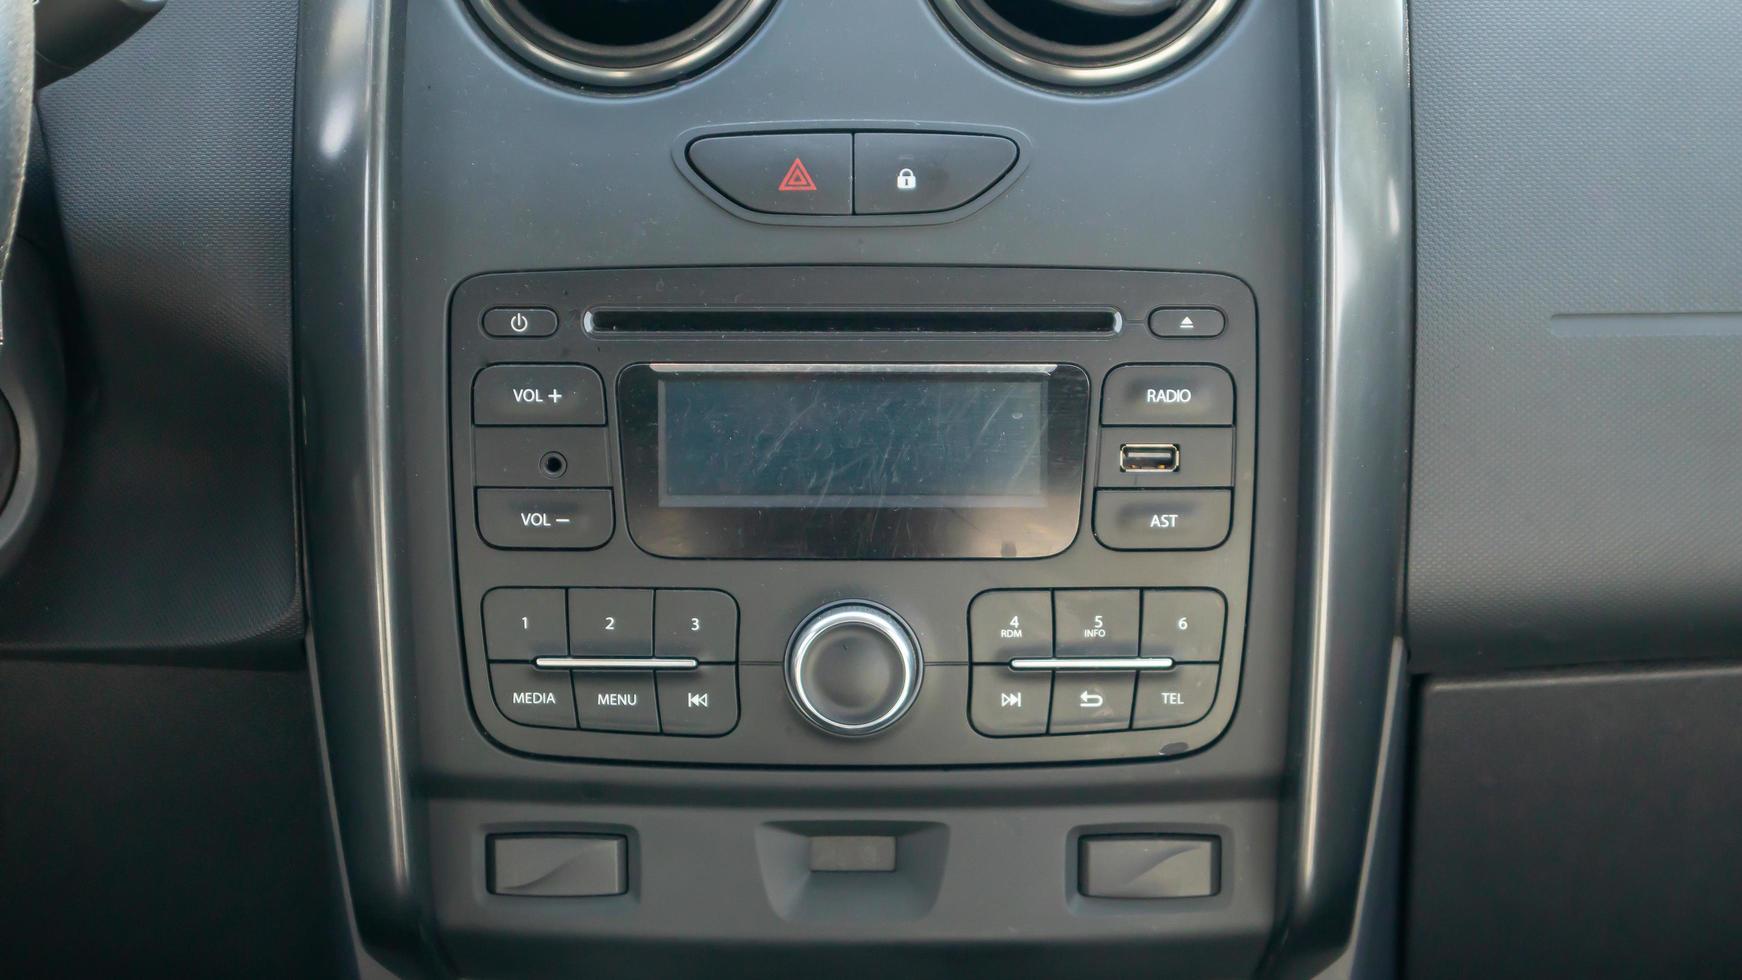 multimediale stabilito in macchina. primo piano dell'unità principale e del ricevitore radio con display all'interno dell'auto. polvere e graffi sono visibili sullo schermo del dispositivo. sistema multimediale. foto